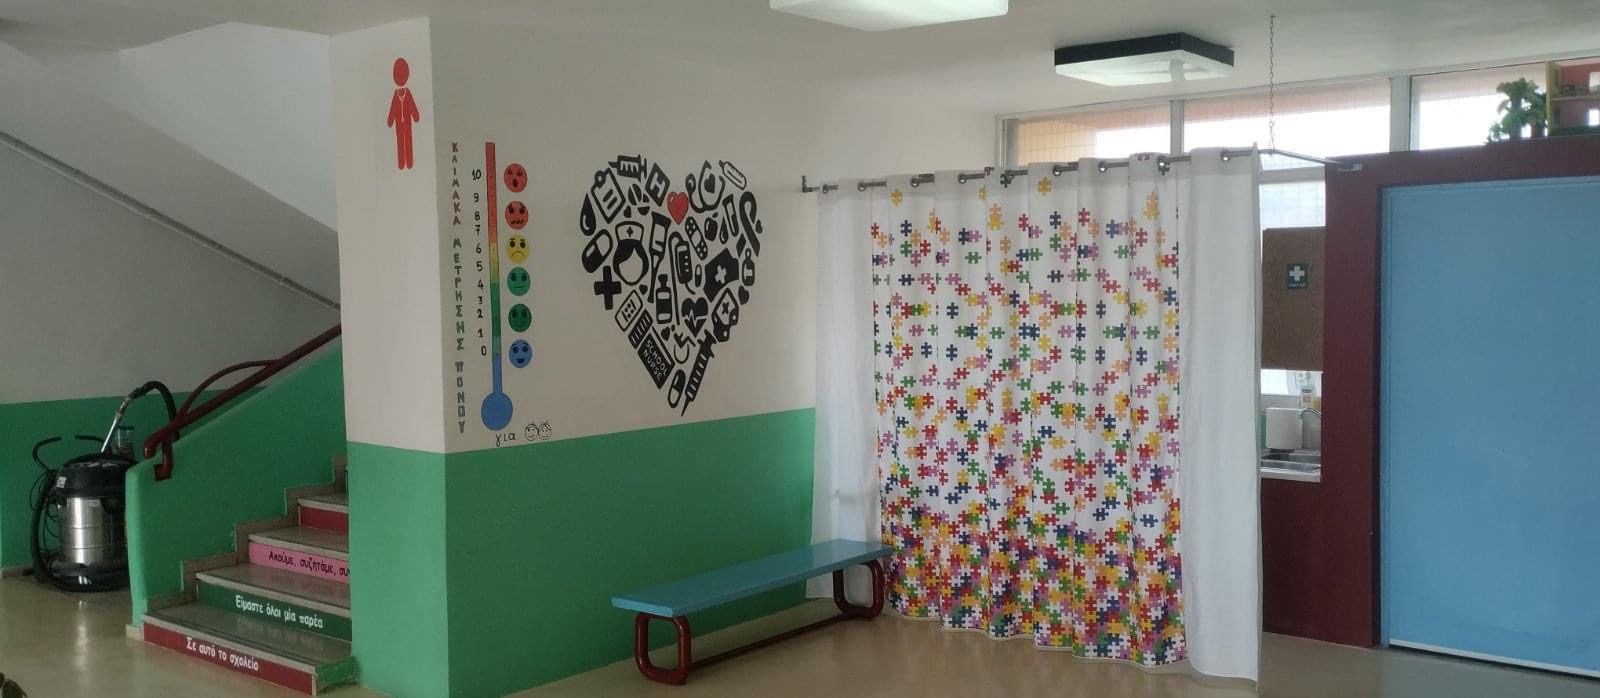 Σχολείο στην Εύβοια έφτιαξε «γωνιά πρώτων» βοηθειών για τους μαθητές